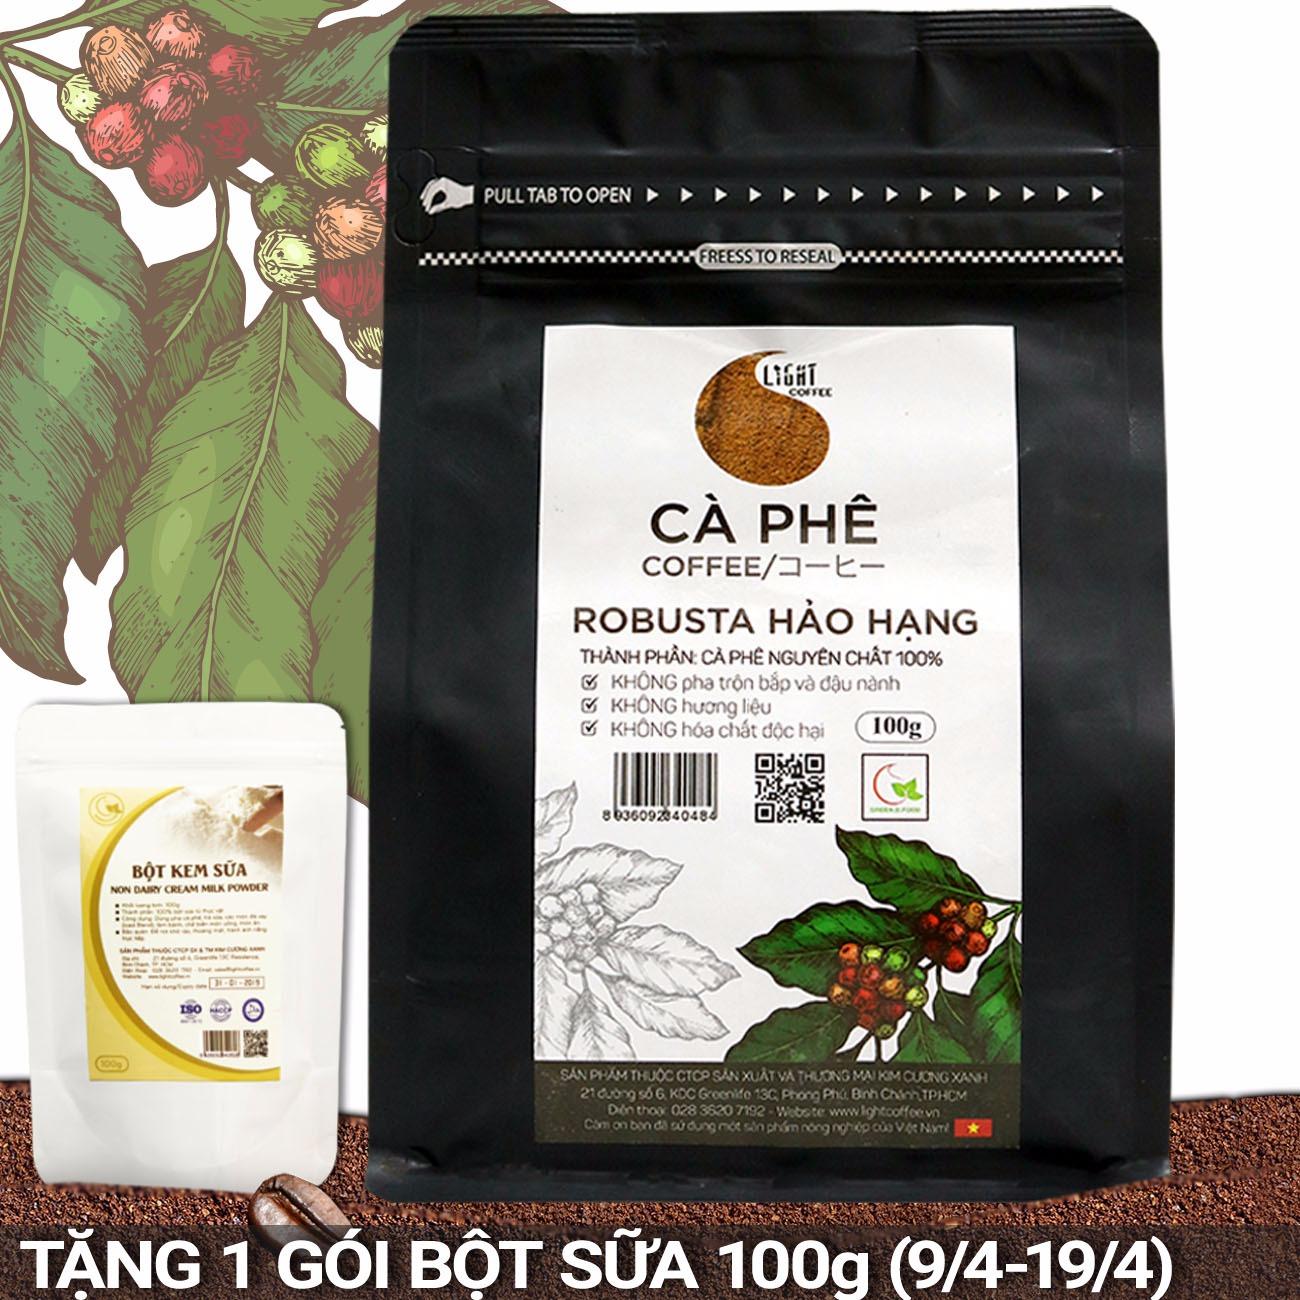 Cà phê bột nguyên chất 100% Robusta Hảo Hạng - Light coffee - gói 100g